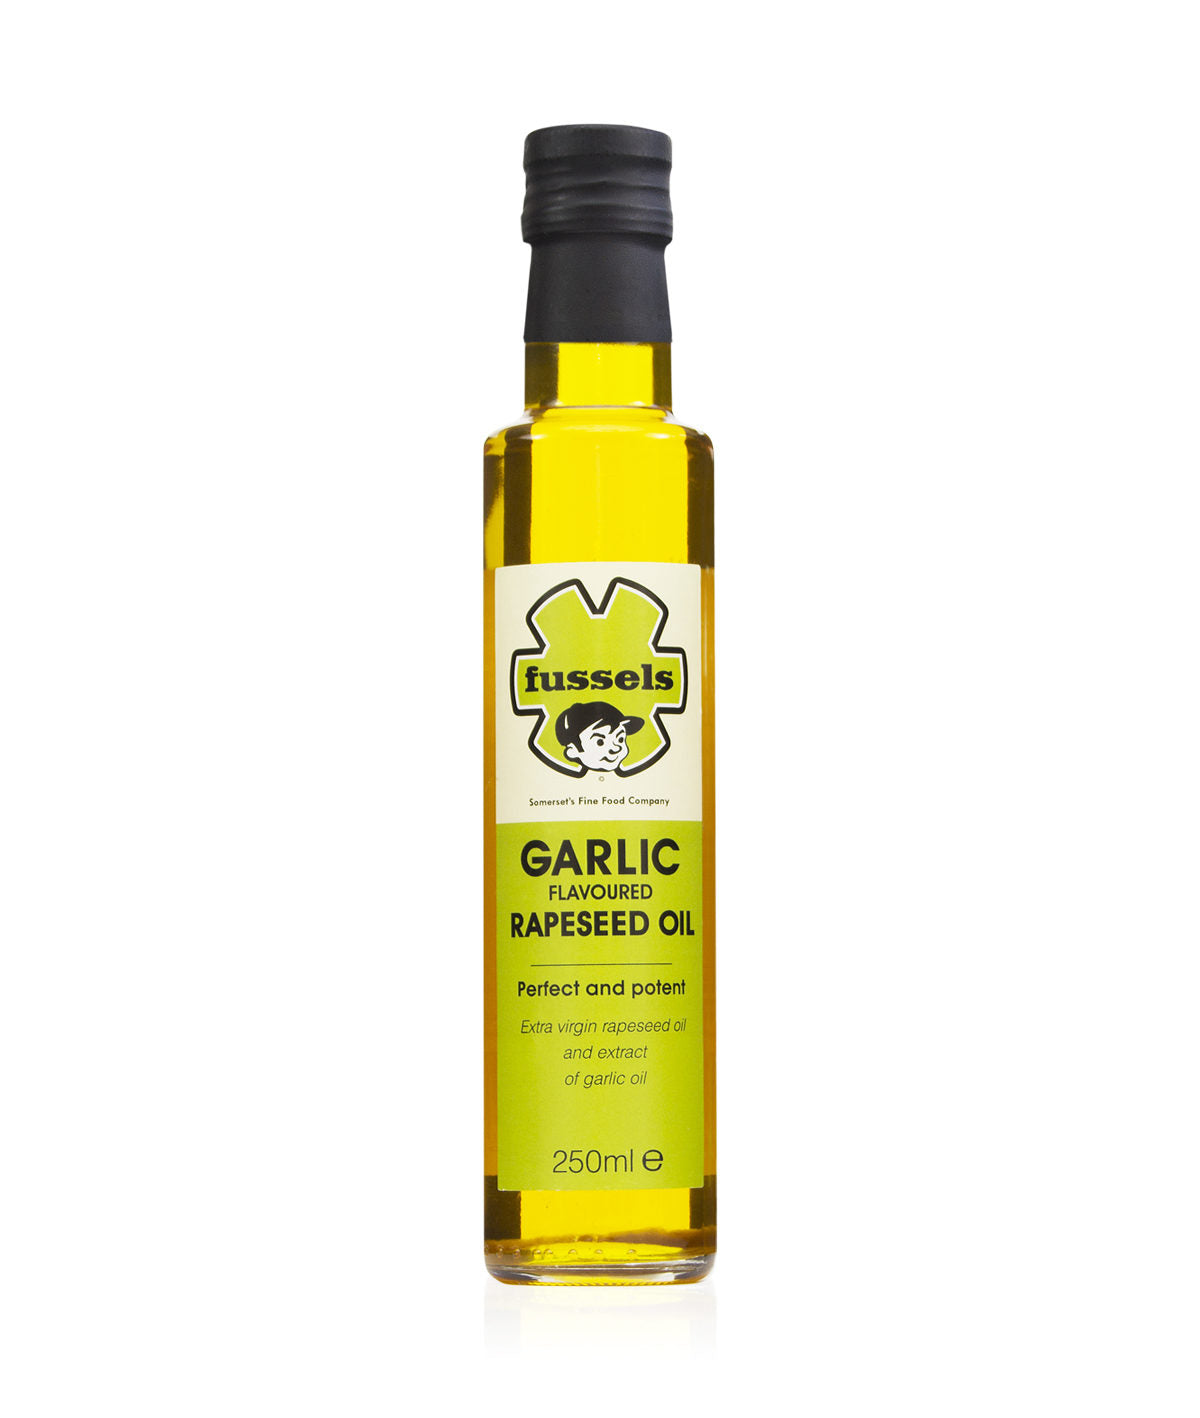 Fussels Garlic Oil, 250ml